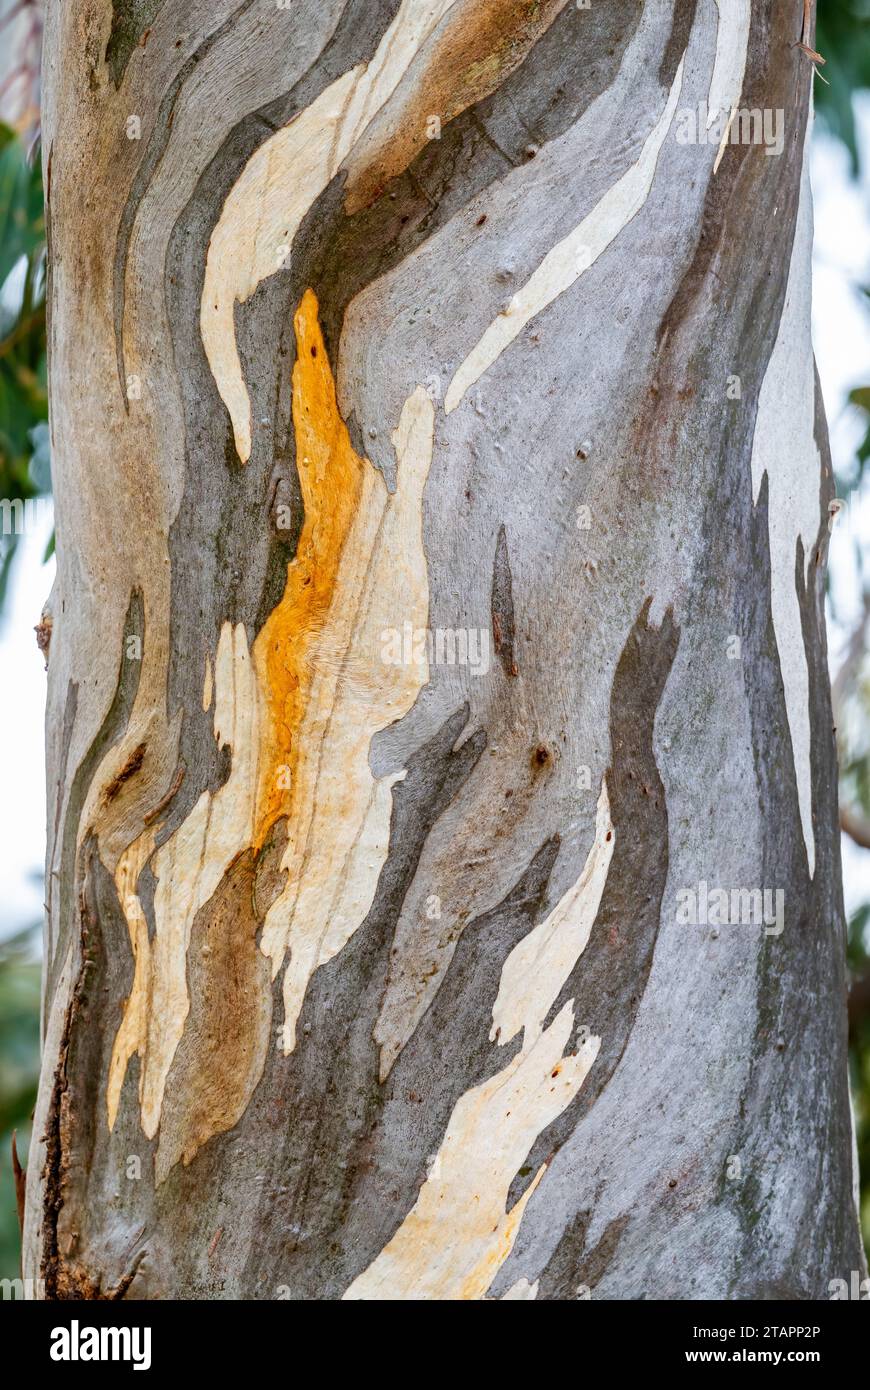 Motivi colorati sul tronco di un albero di eucalipto. Victoria, Australia. Foto Stock